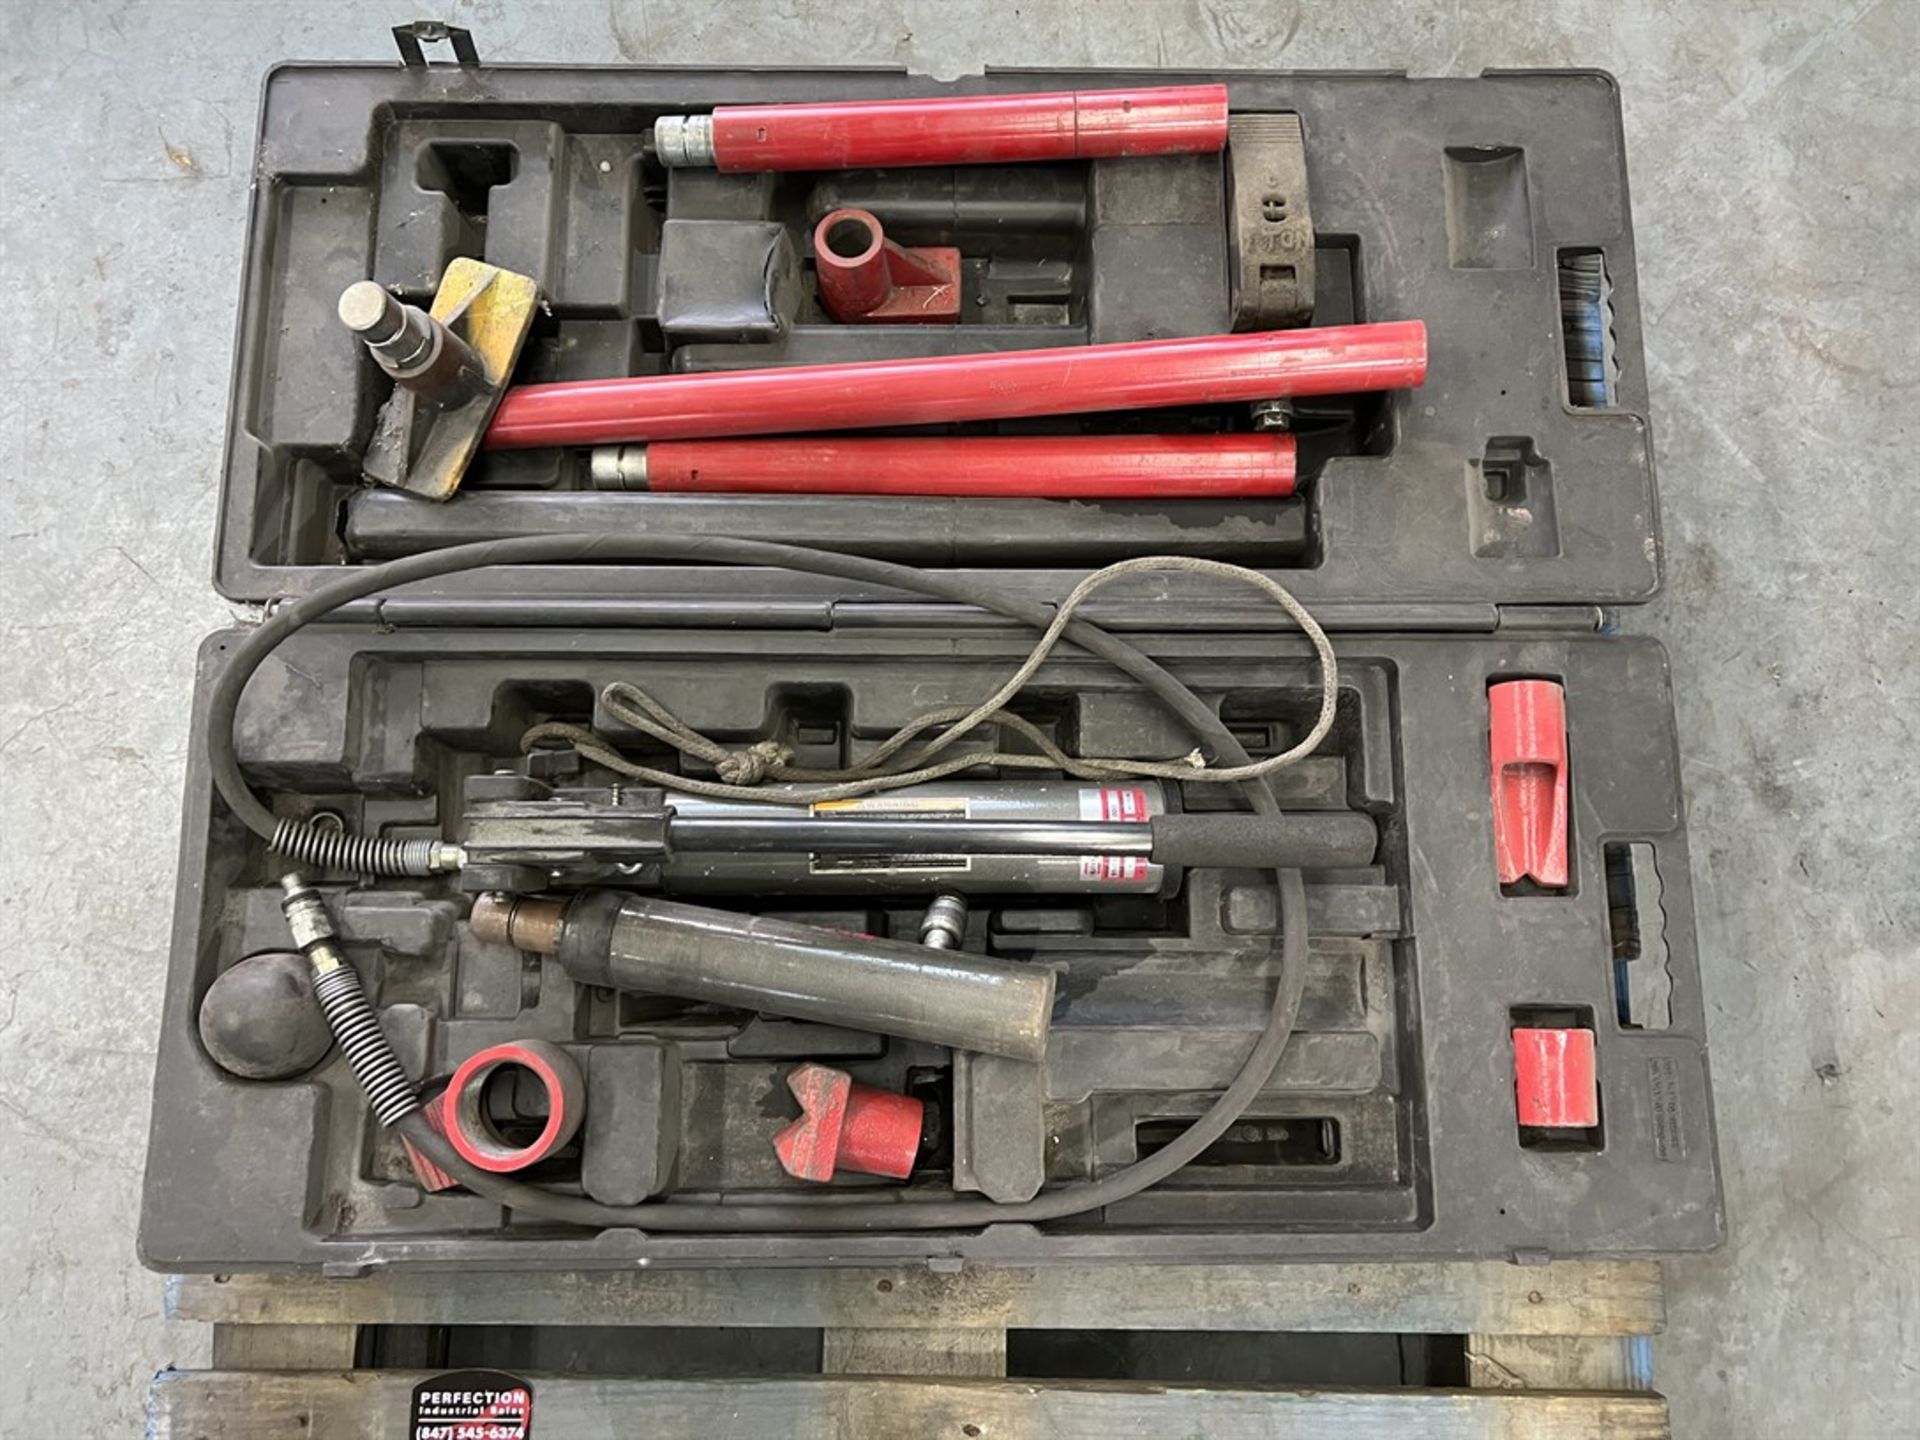 NAPA 91-599 10-Ton Deluxe Body Repair Kit (Building 44) - Image 2 of 2